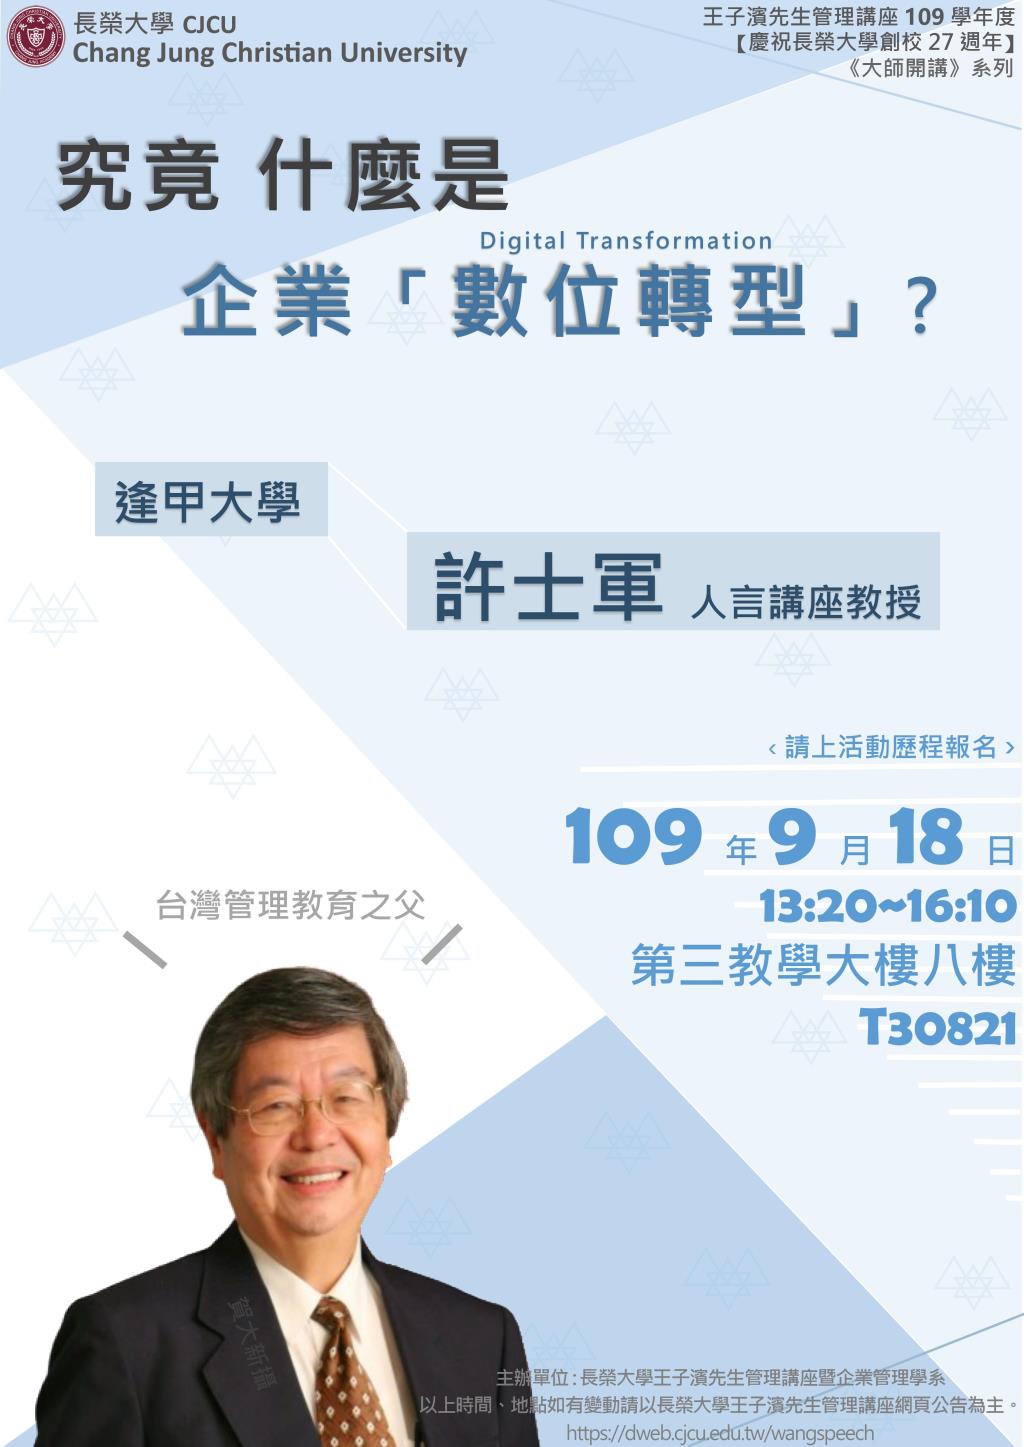 敬邀參加本週五下午(9/18)王子濱先生管理講座---究竟什麼是企業「數位轉型」? 逢甲大學人言講座 許士軍教授